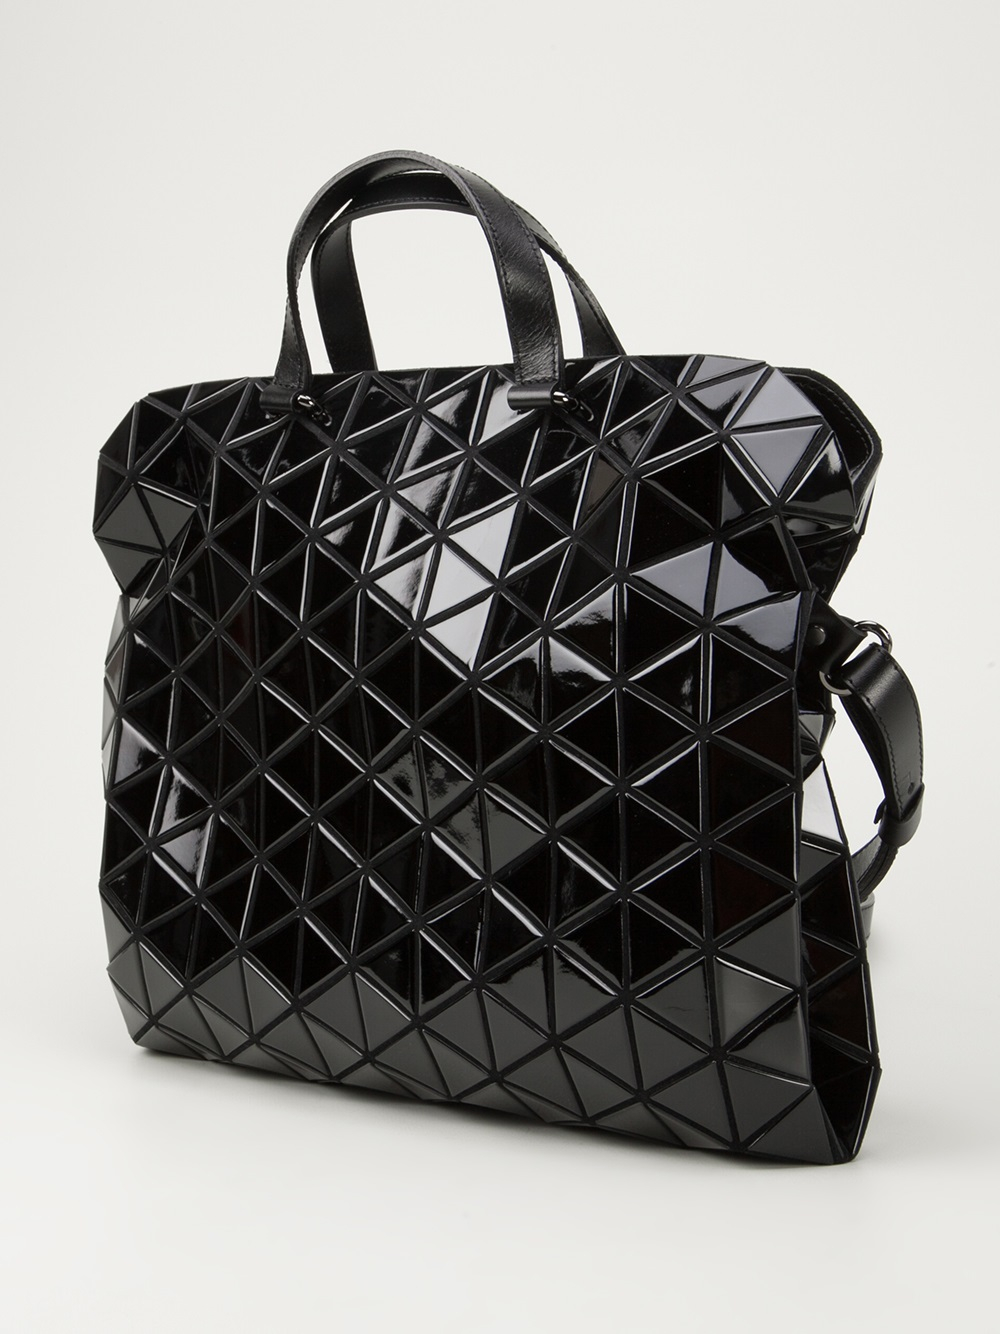 Lyst - Bao Bao Issey Miyake Geometric Bag in Black